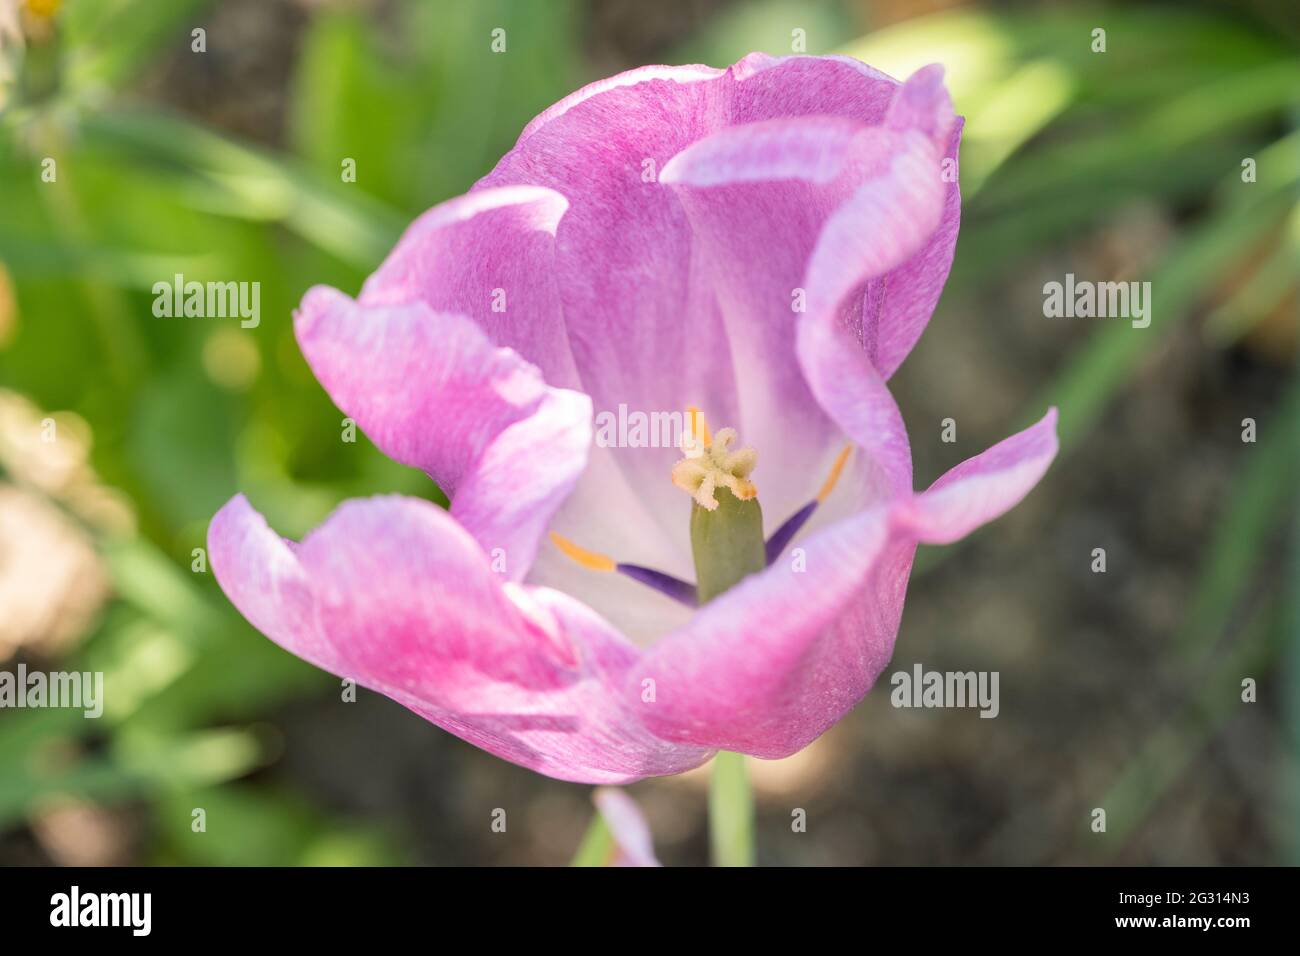 Une tulipe hybride rose pâle / magenta (Tulipa), floraison en juin, Autriche Banque D'Images